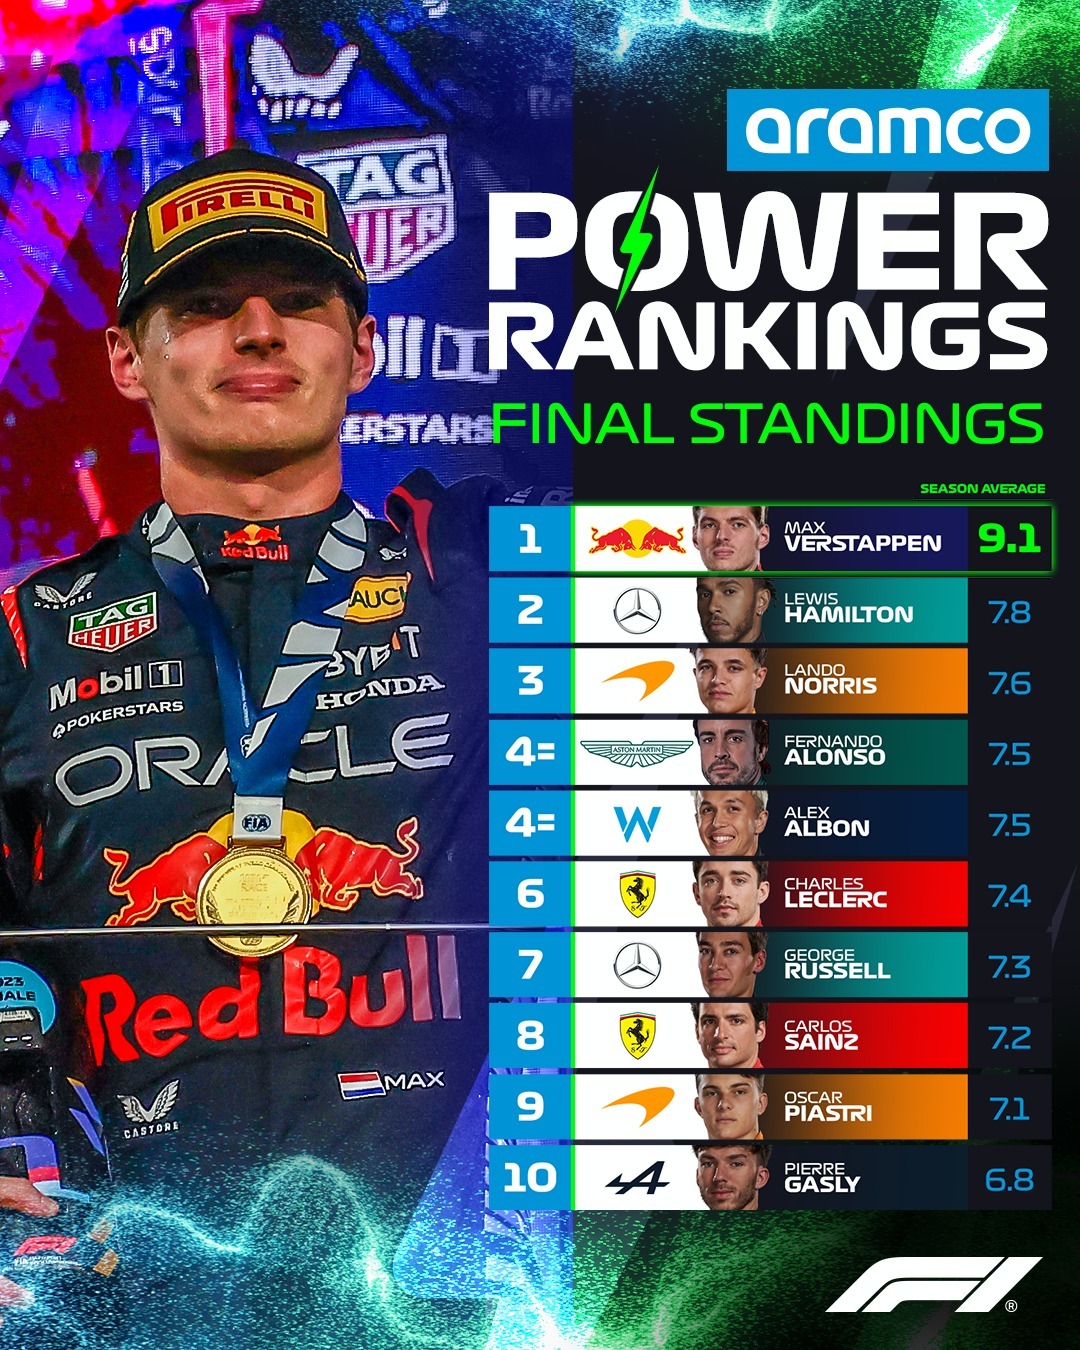 La calificación final de los Power Rankings F1